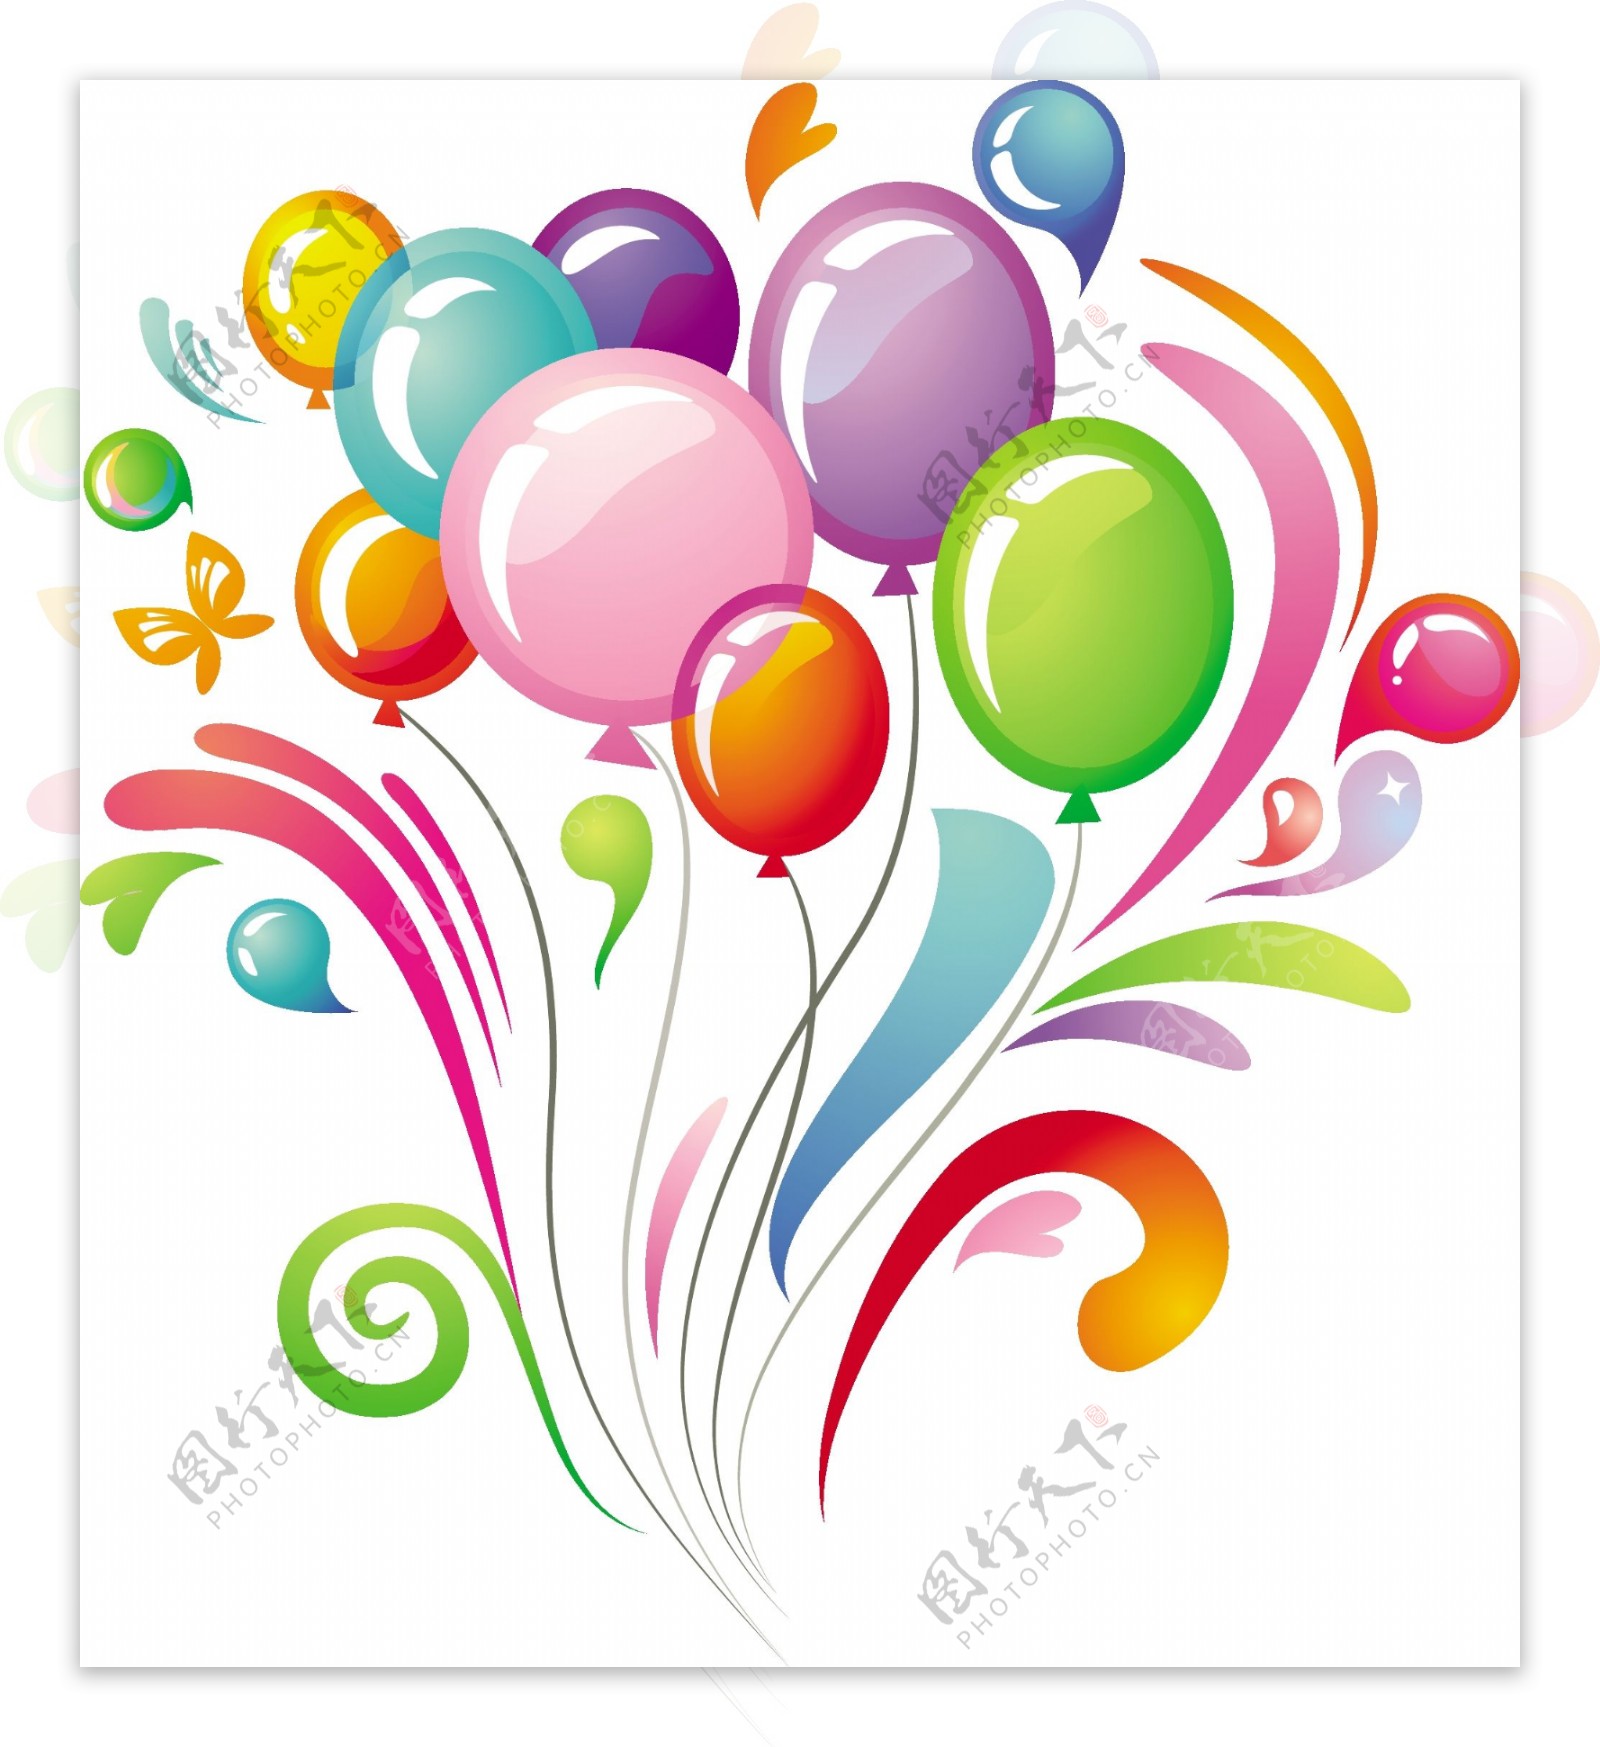 彩色气球矢量气球丰富多彩的节日